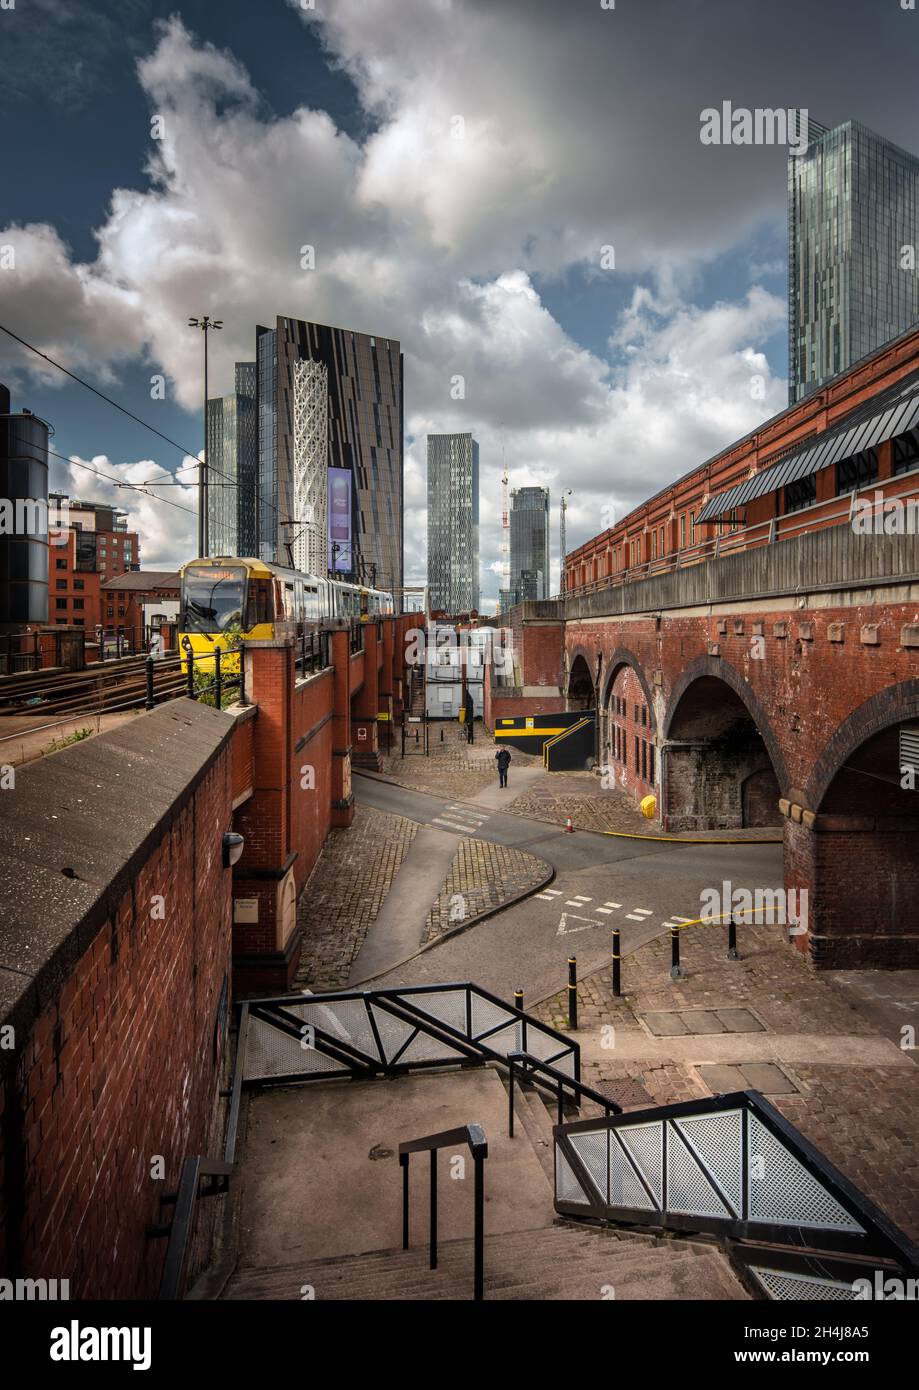 Manchester Street scena che contrasta l'architettura moderna con il suo patrimonio vittoriano di mattoni rossi costruzione e archi Foto Stock